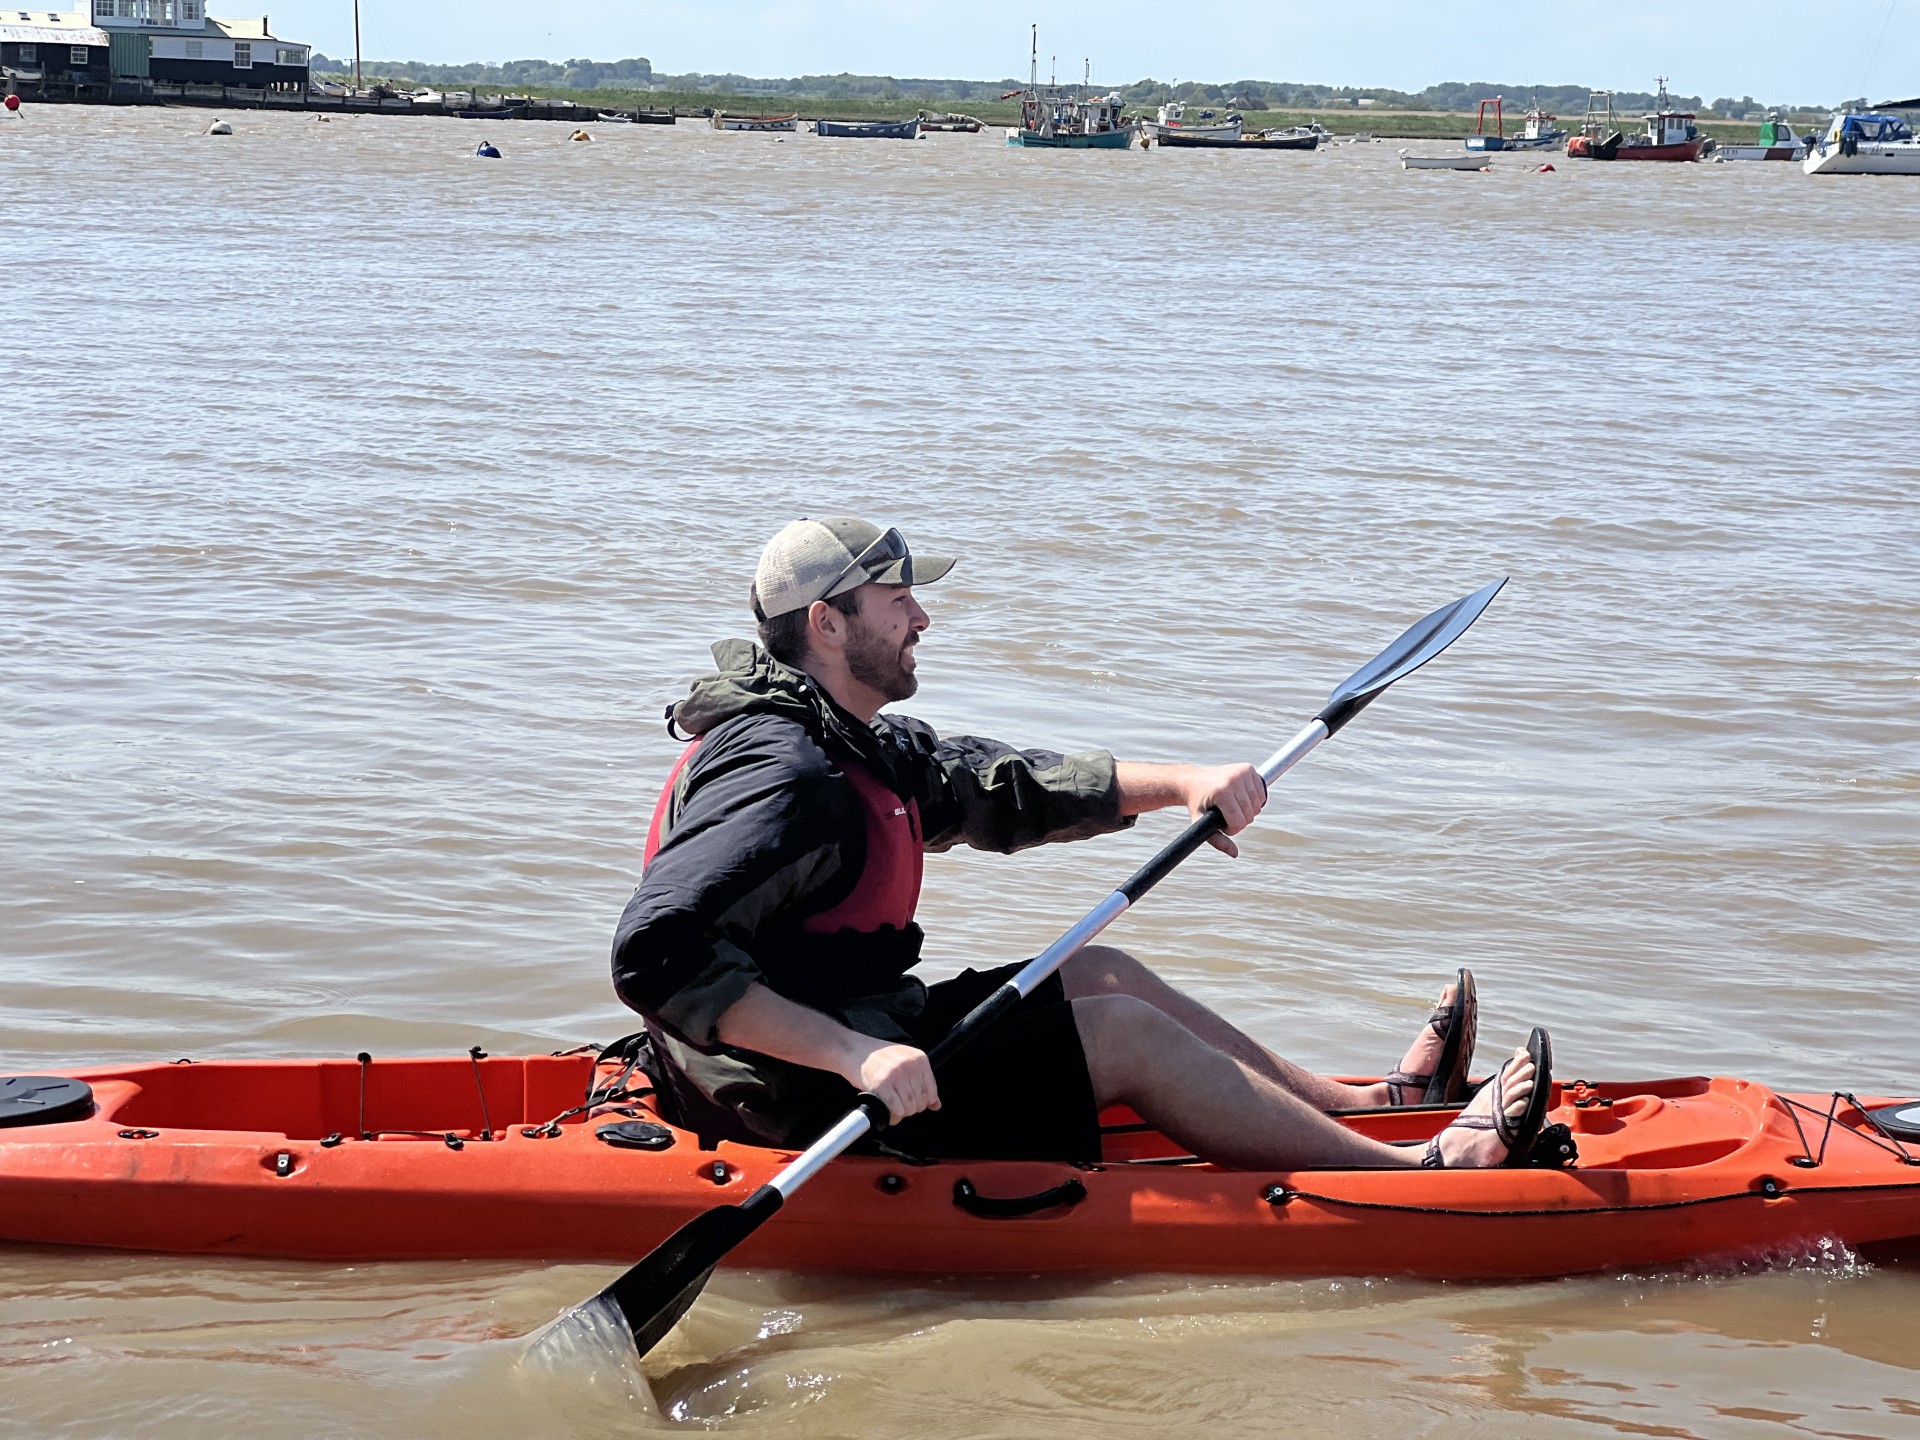 Same sea kayaker paddling his kayak on the Deben estuary.